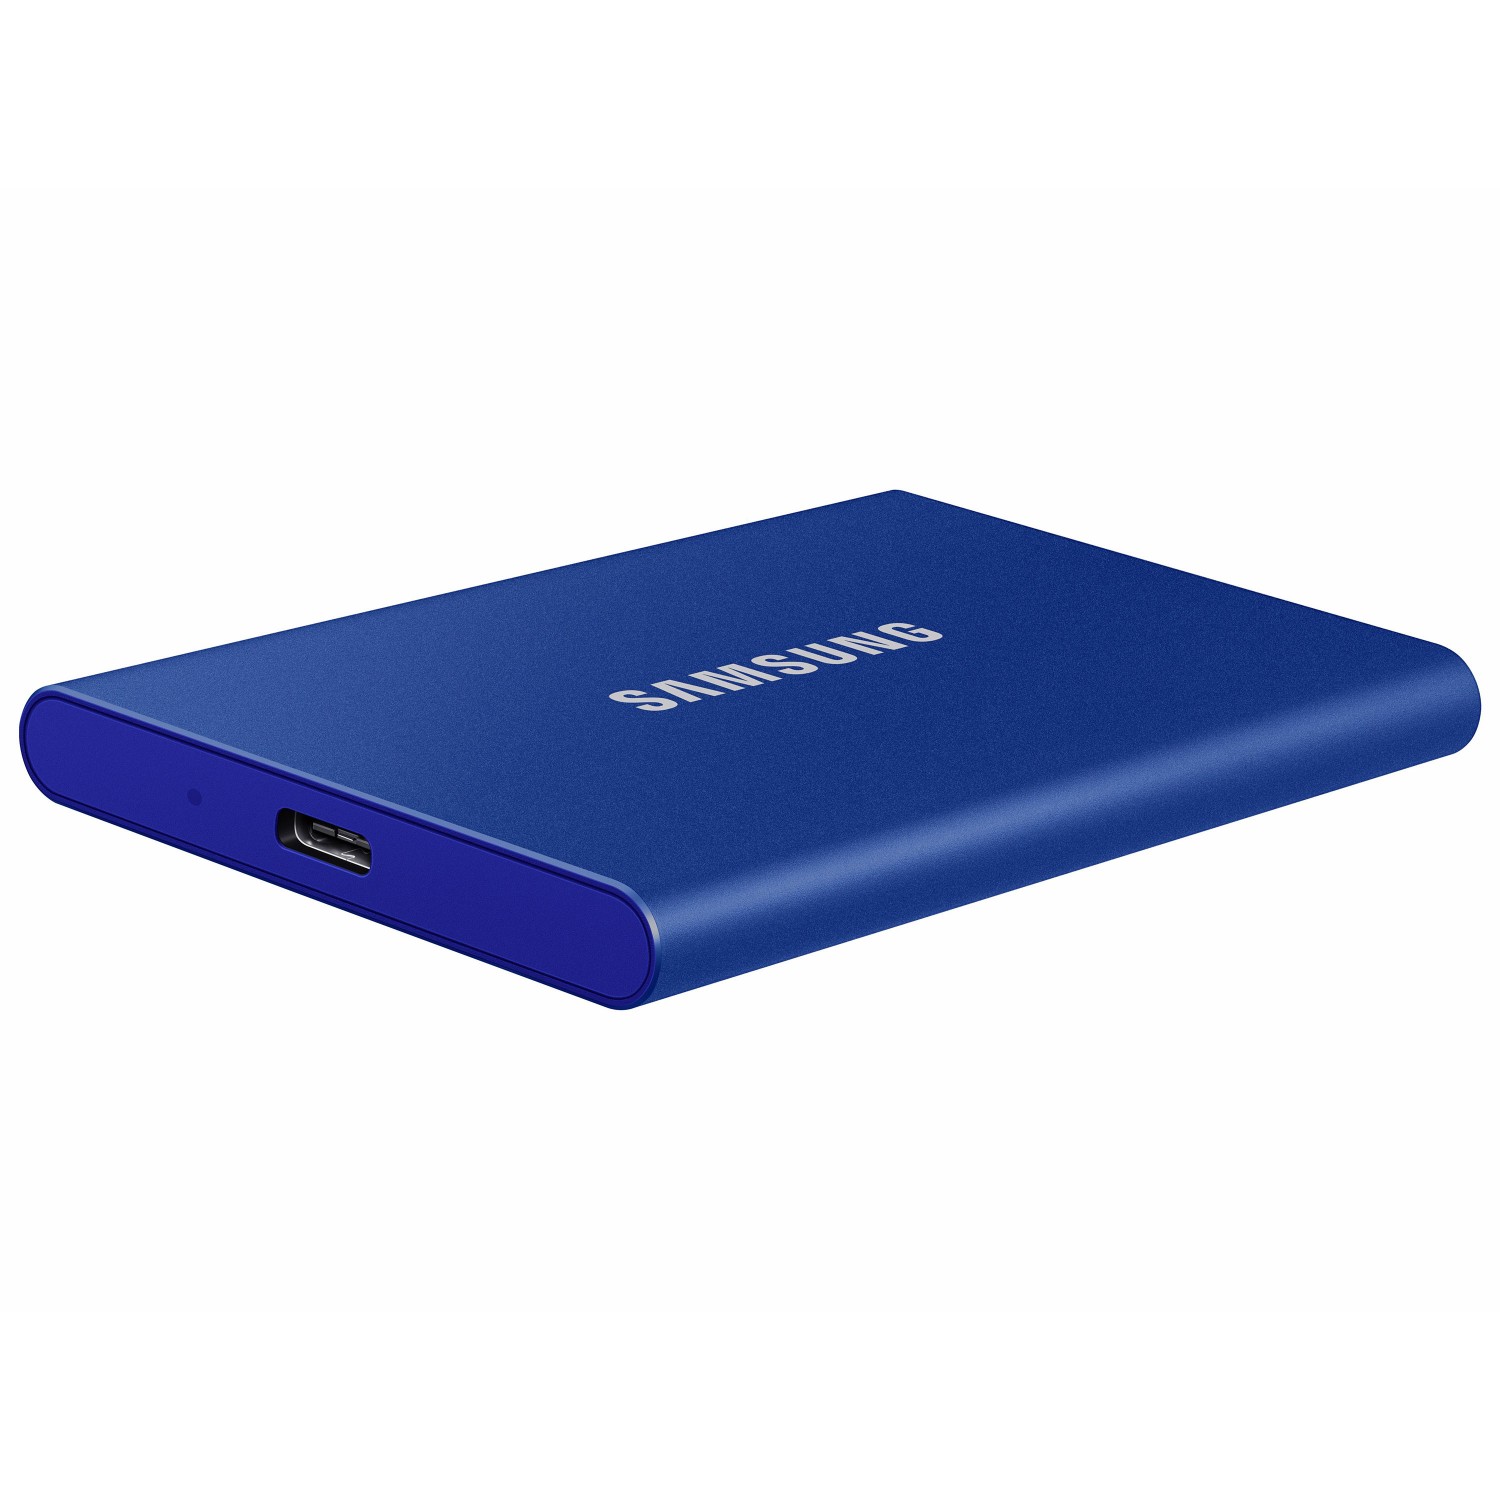 حافظه اس اس دی اکسترنال SAMSUNG T7 500GB - Indigo Blue-3